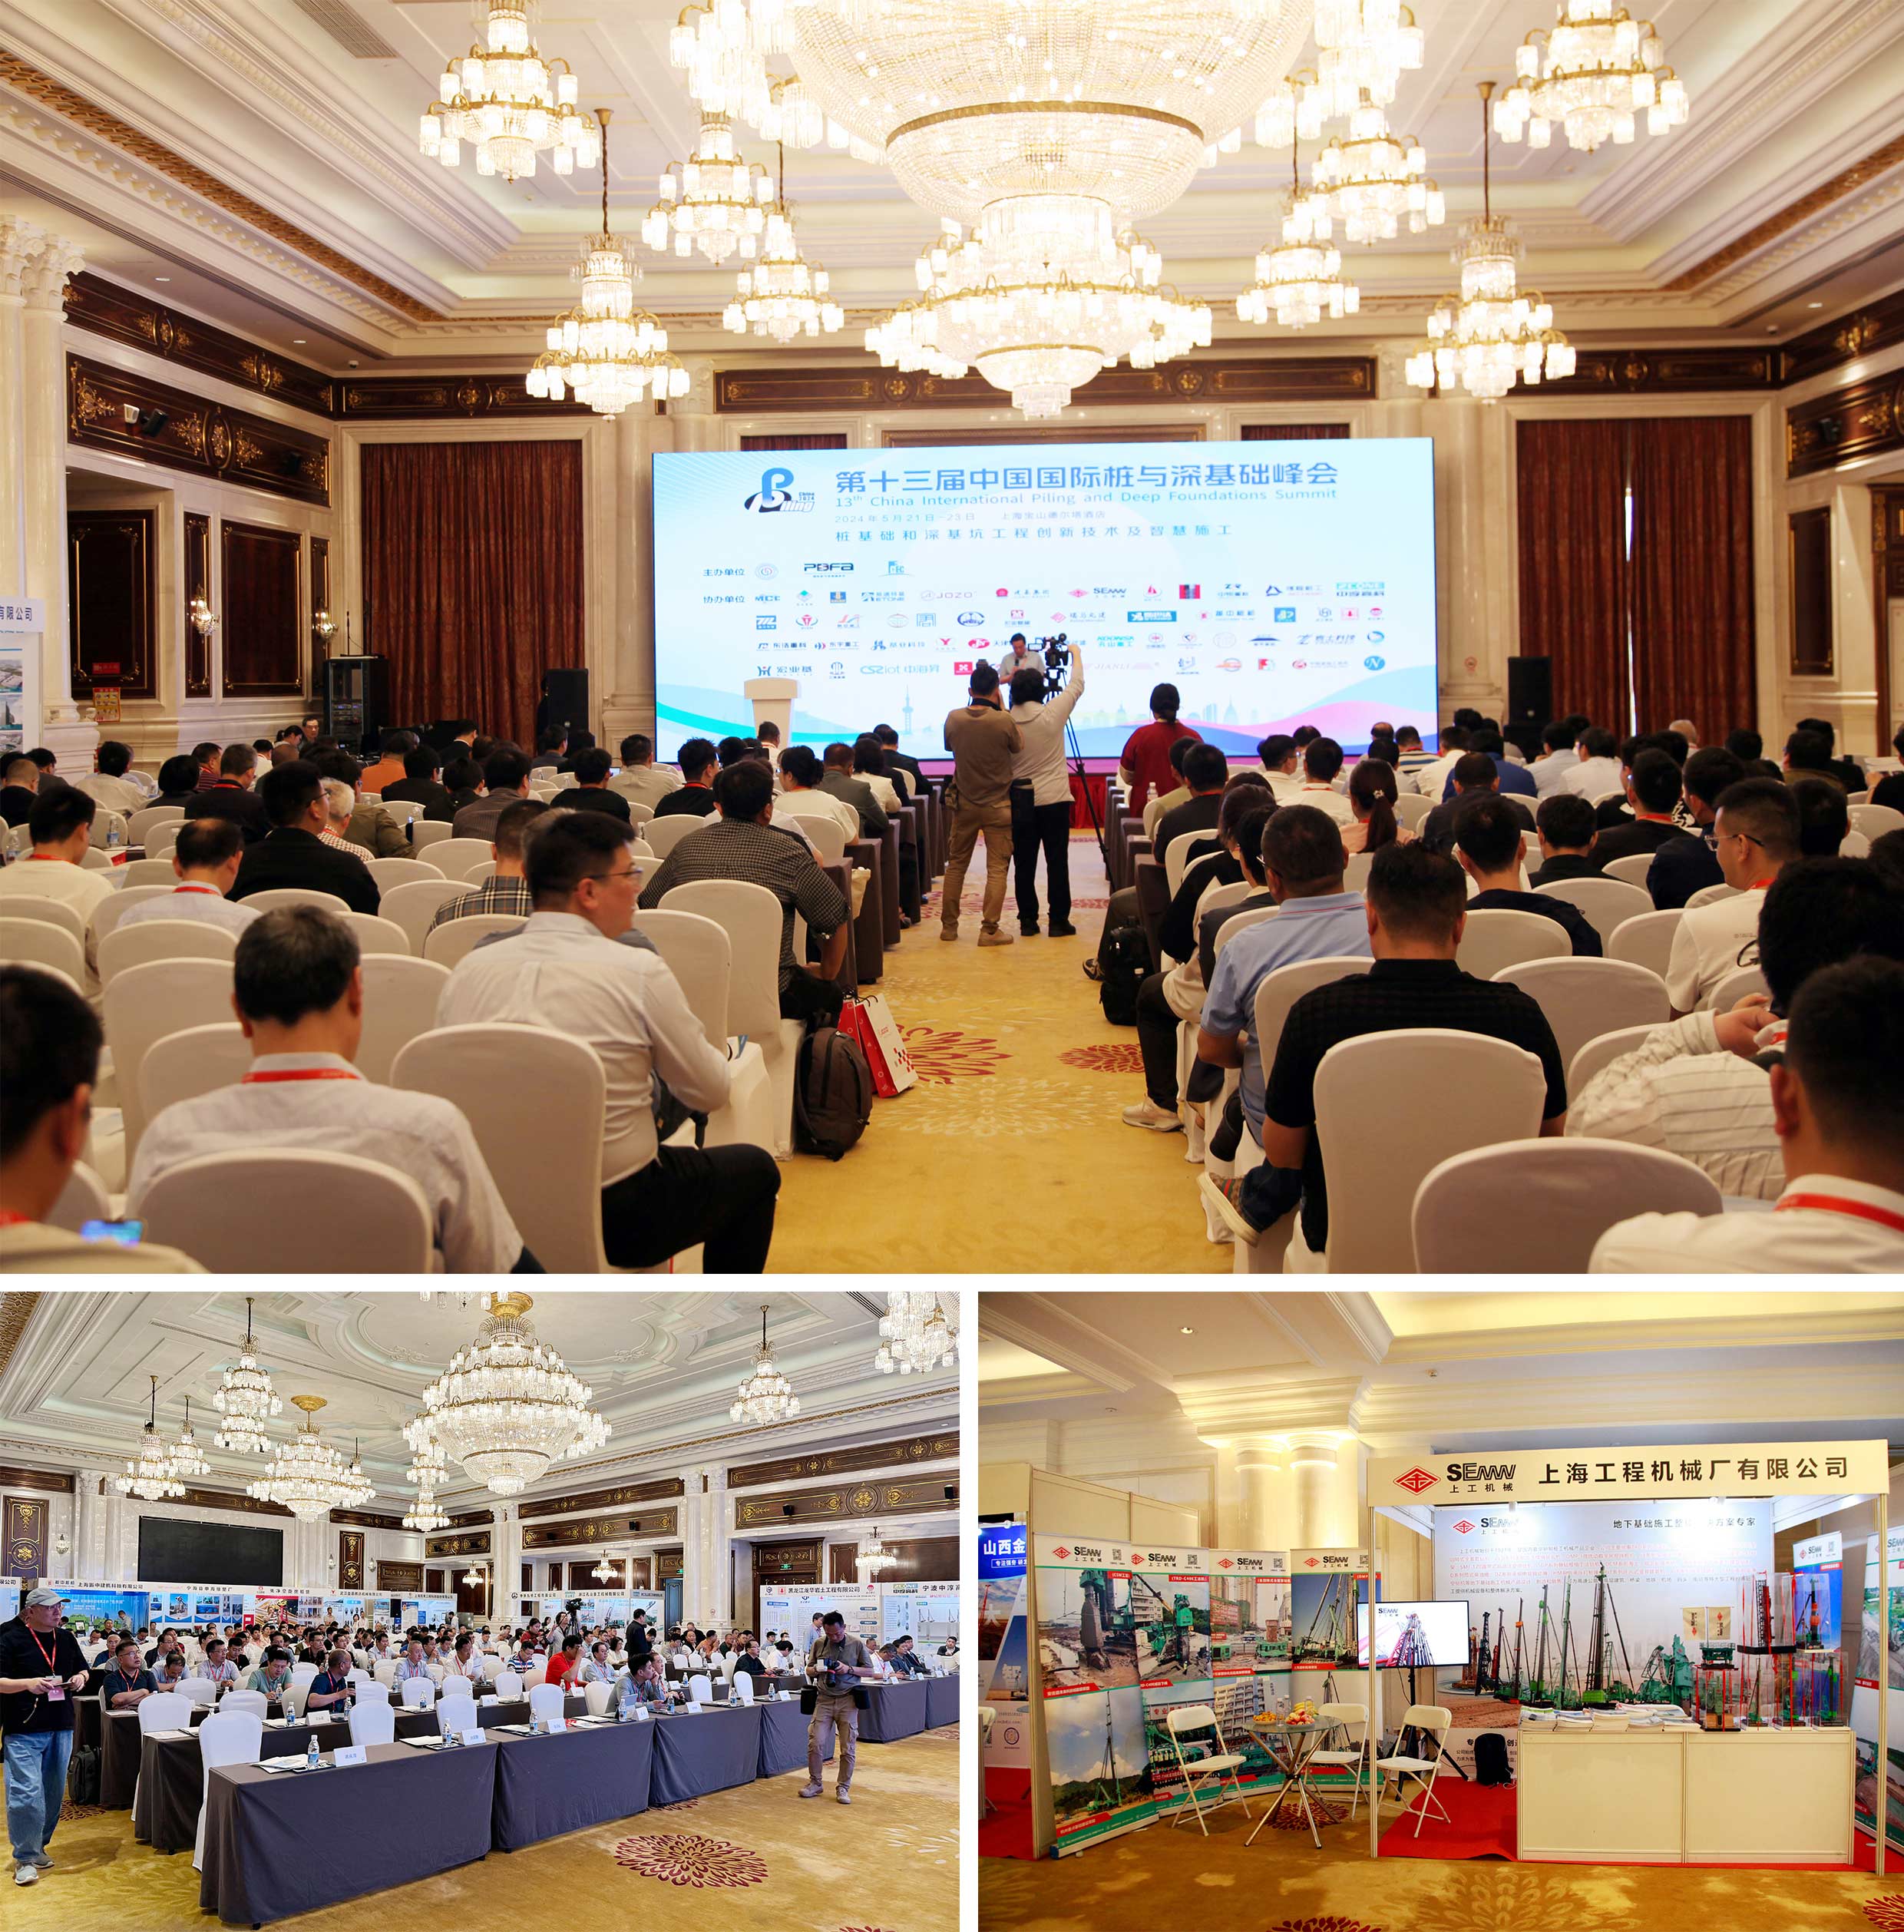 SEMW-ը բերեց իր մանրախիճ կույտերի կառուցման տեխնոլոգիան Չինաստանի 13-րդ միջազգային կույտ և խորը հիմնադրամի գագաթնաժողովին: